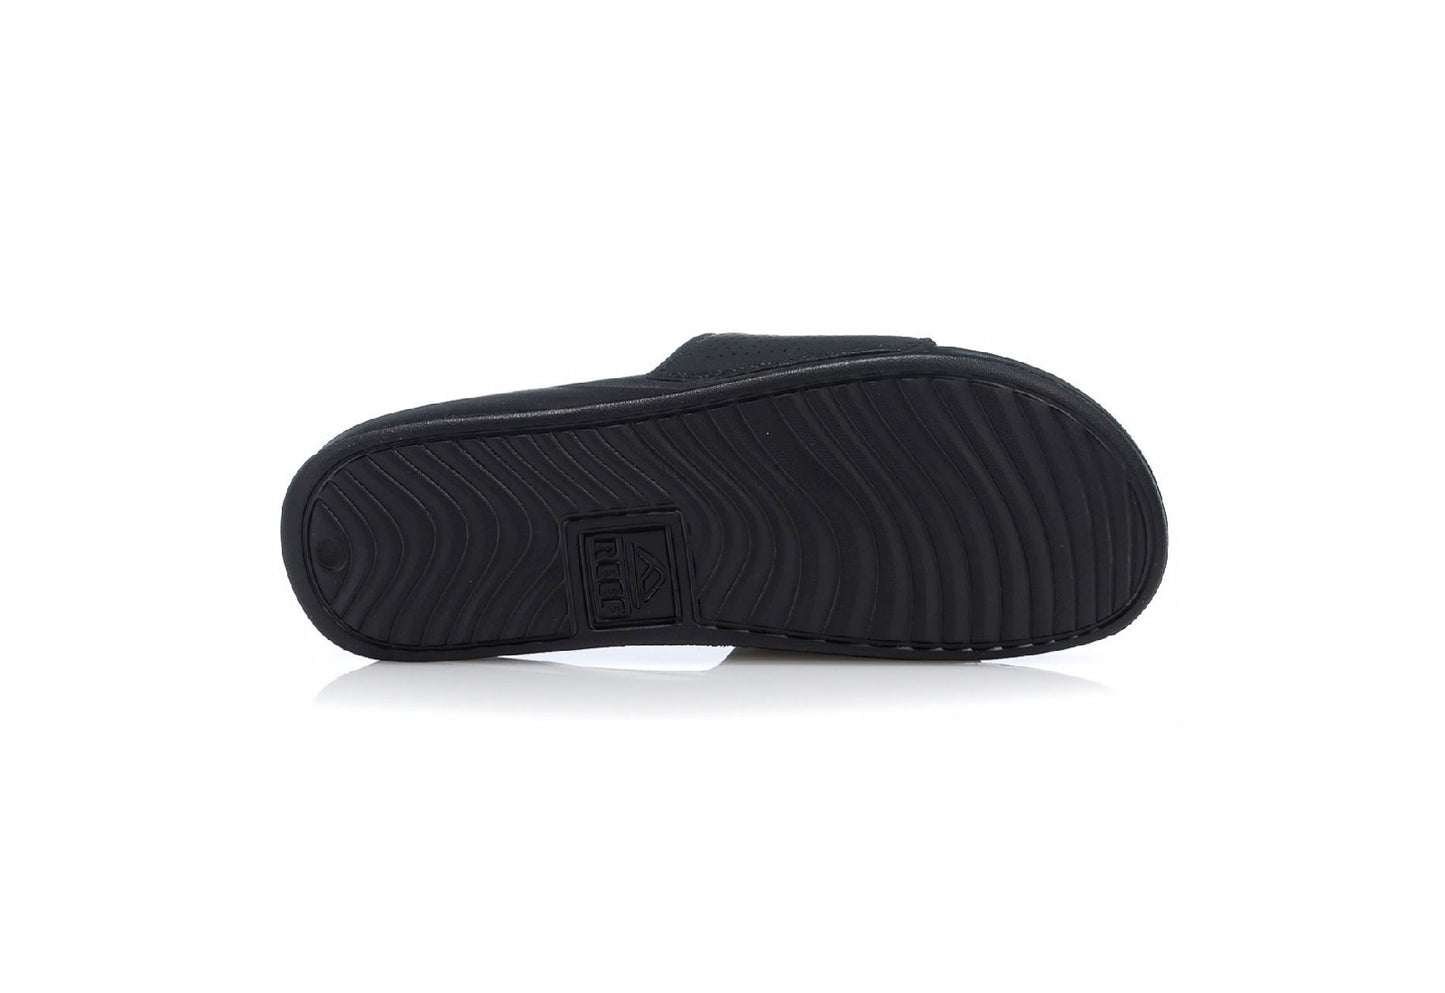 Reef Men's One Slide Sandals, Black